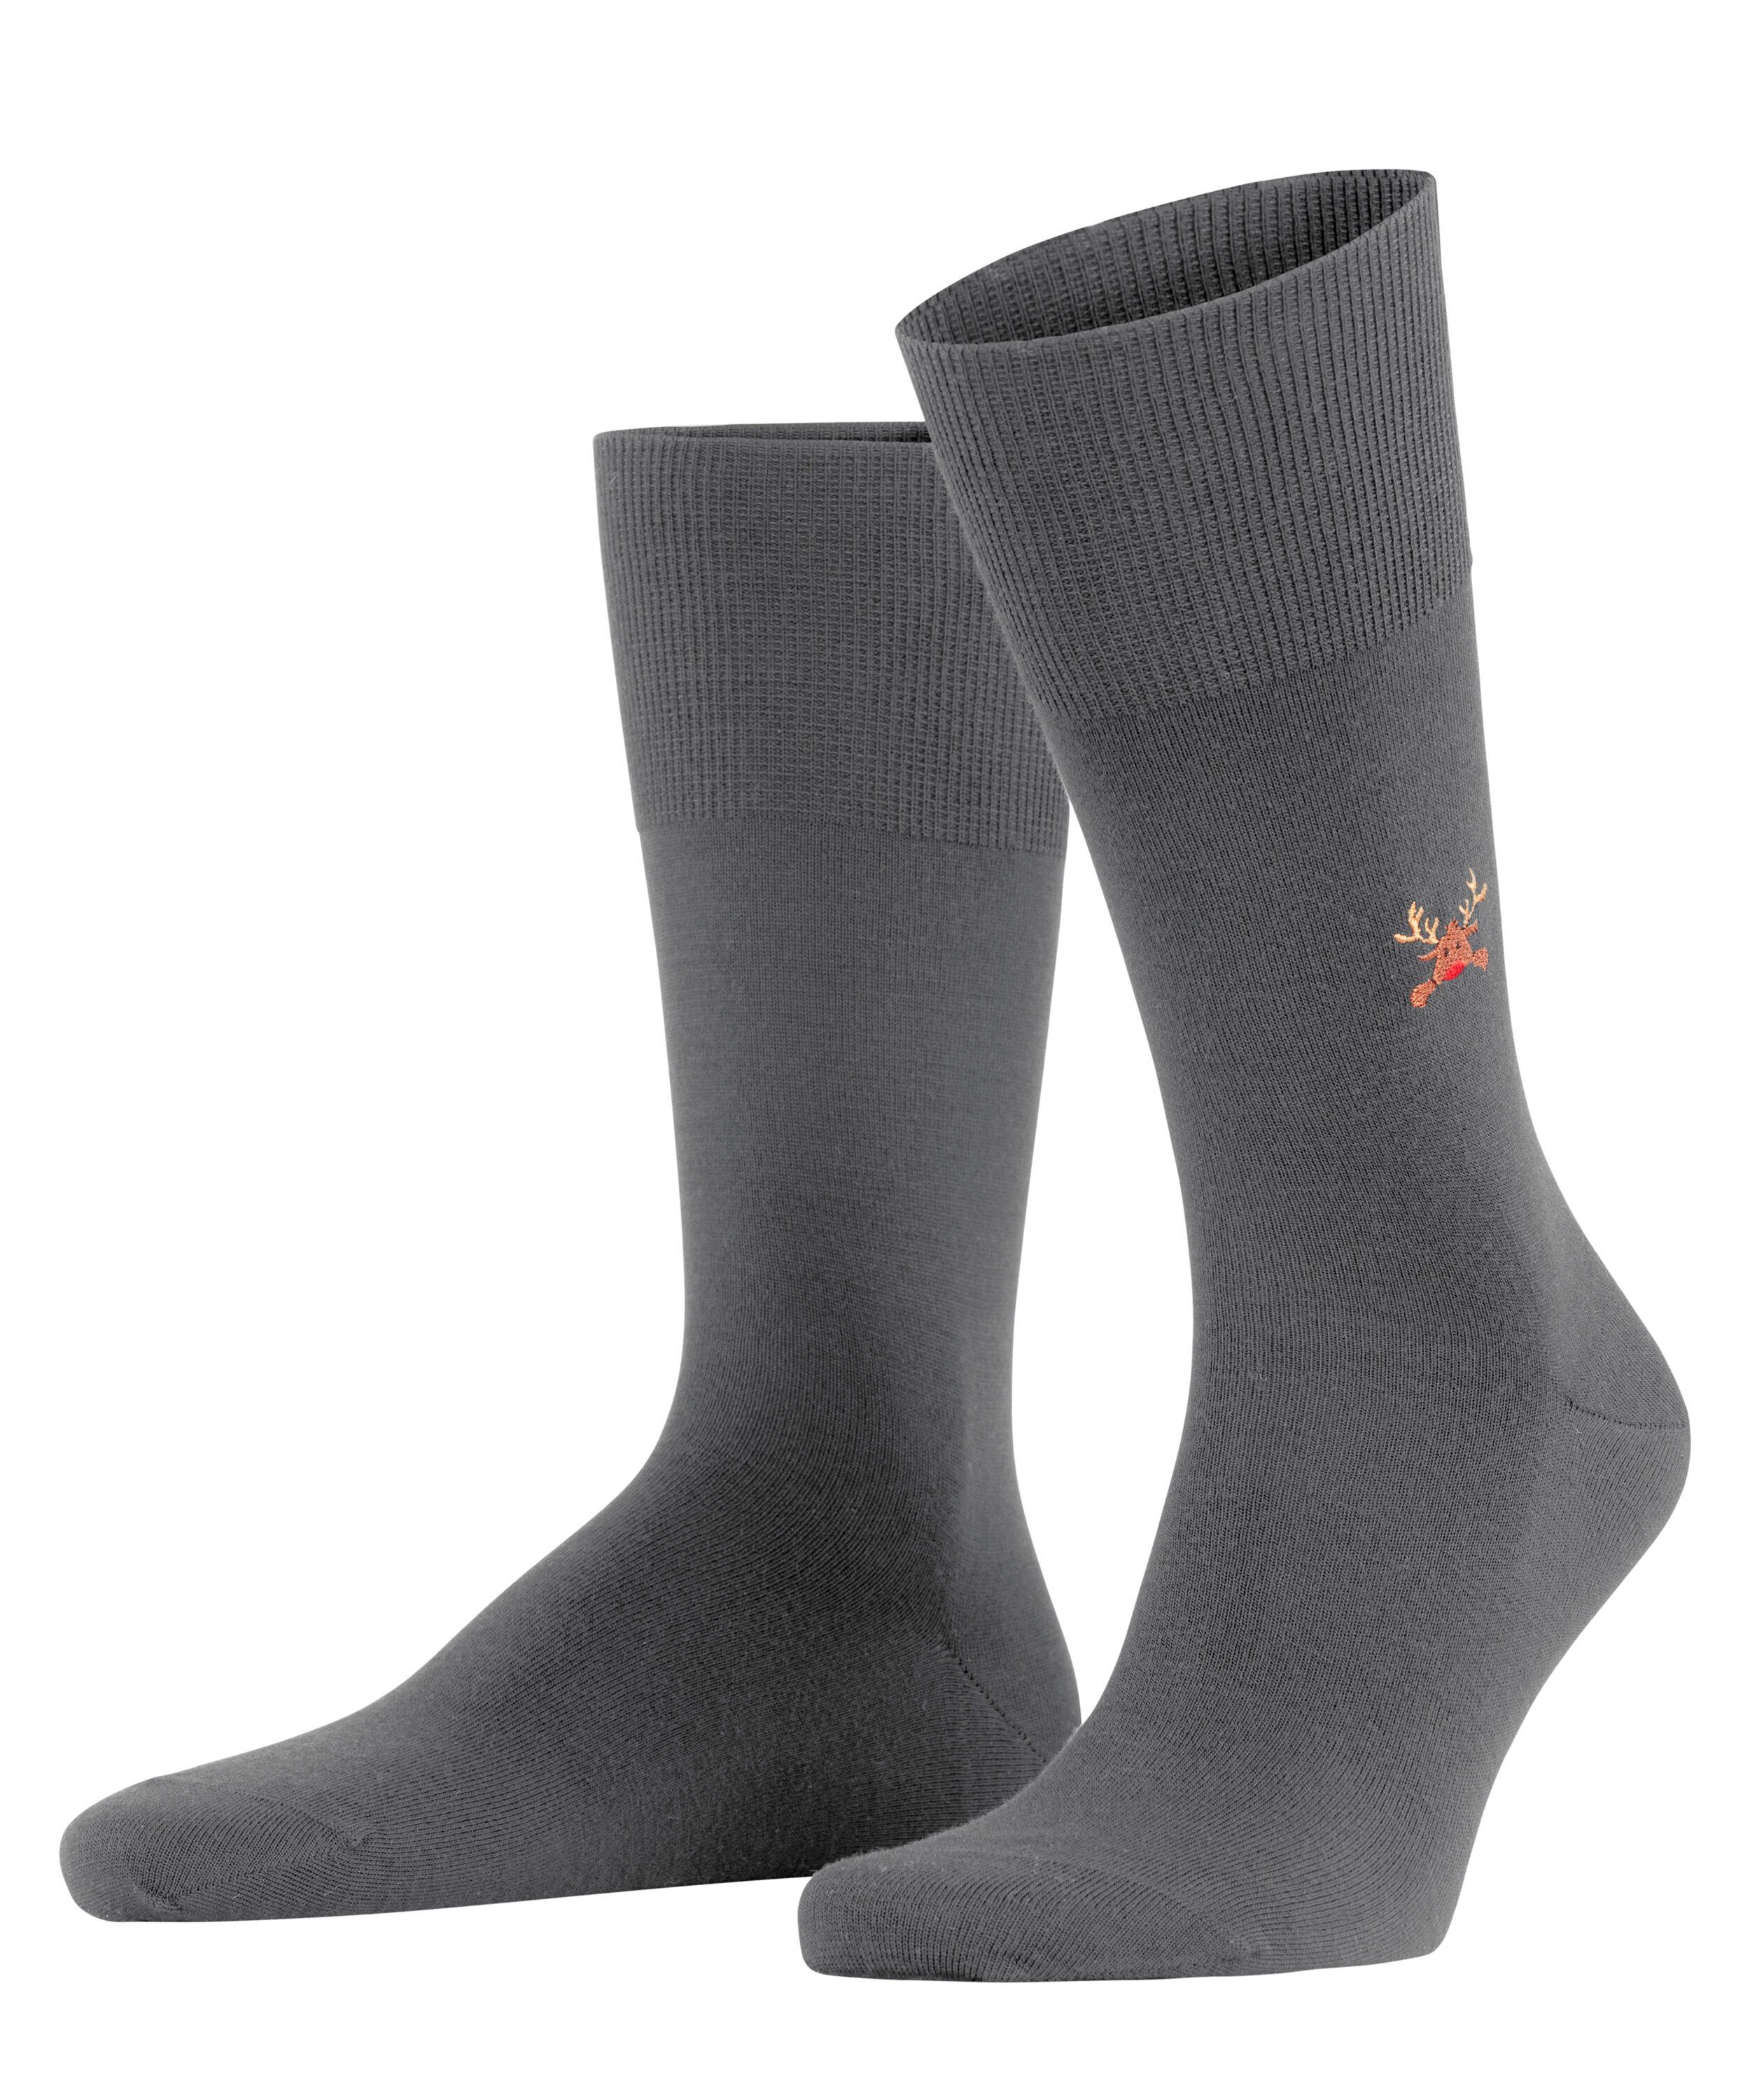 Rudolph FALKE (3070) Socken Airport grey dark (1-Paar)